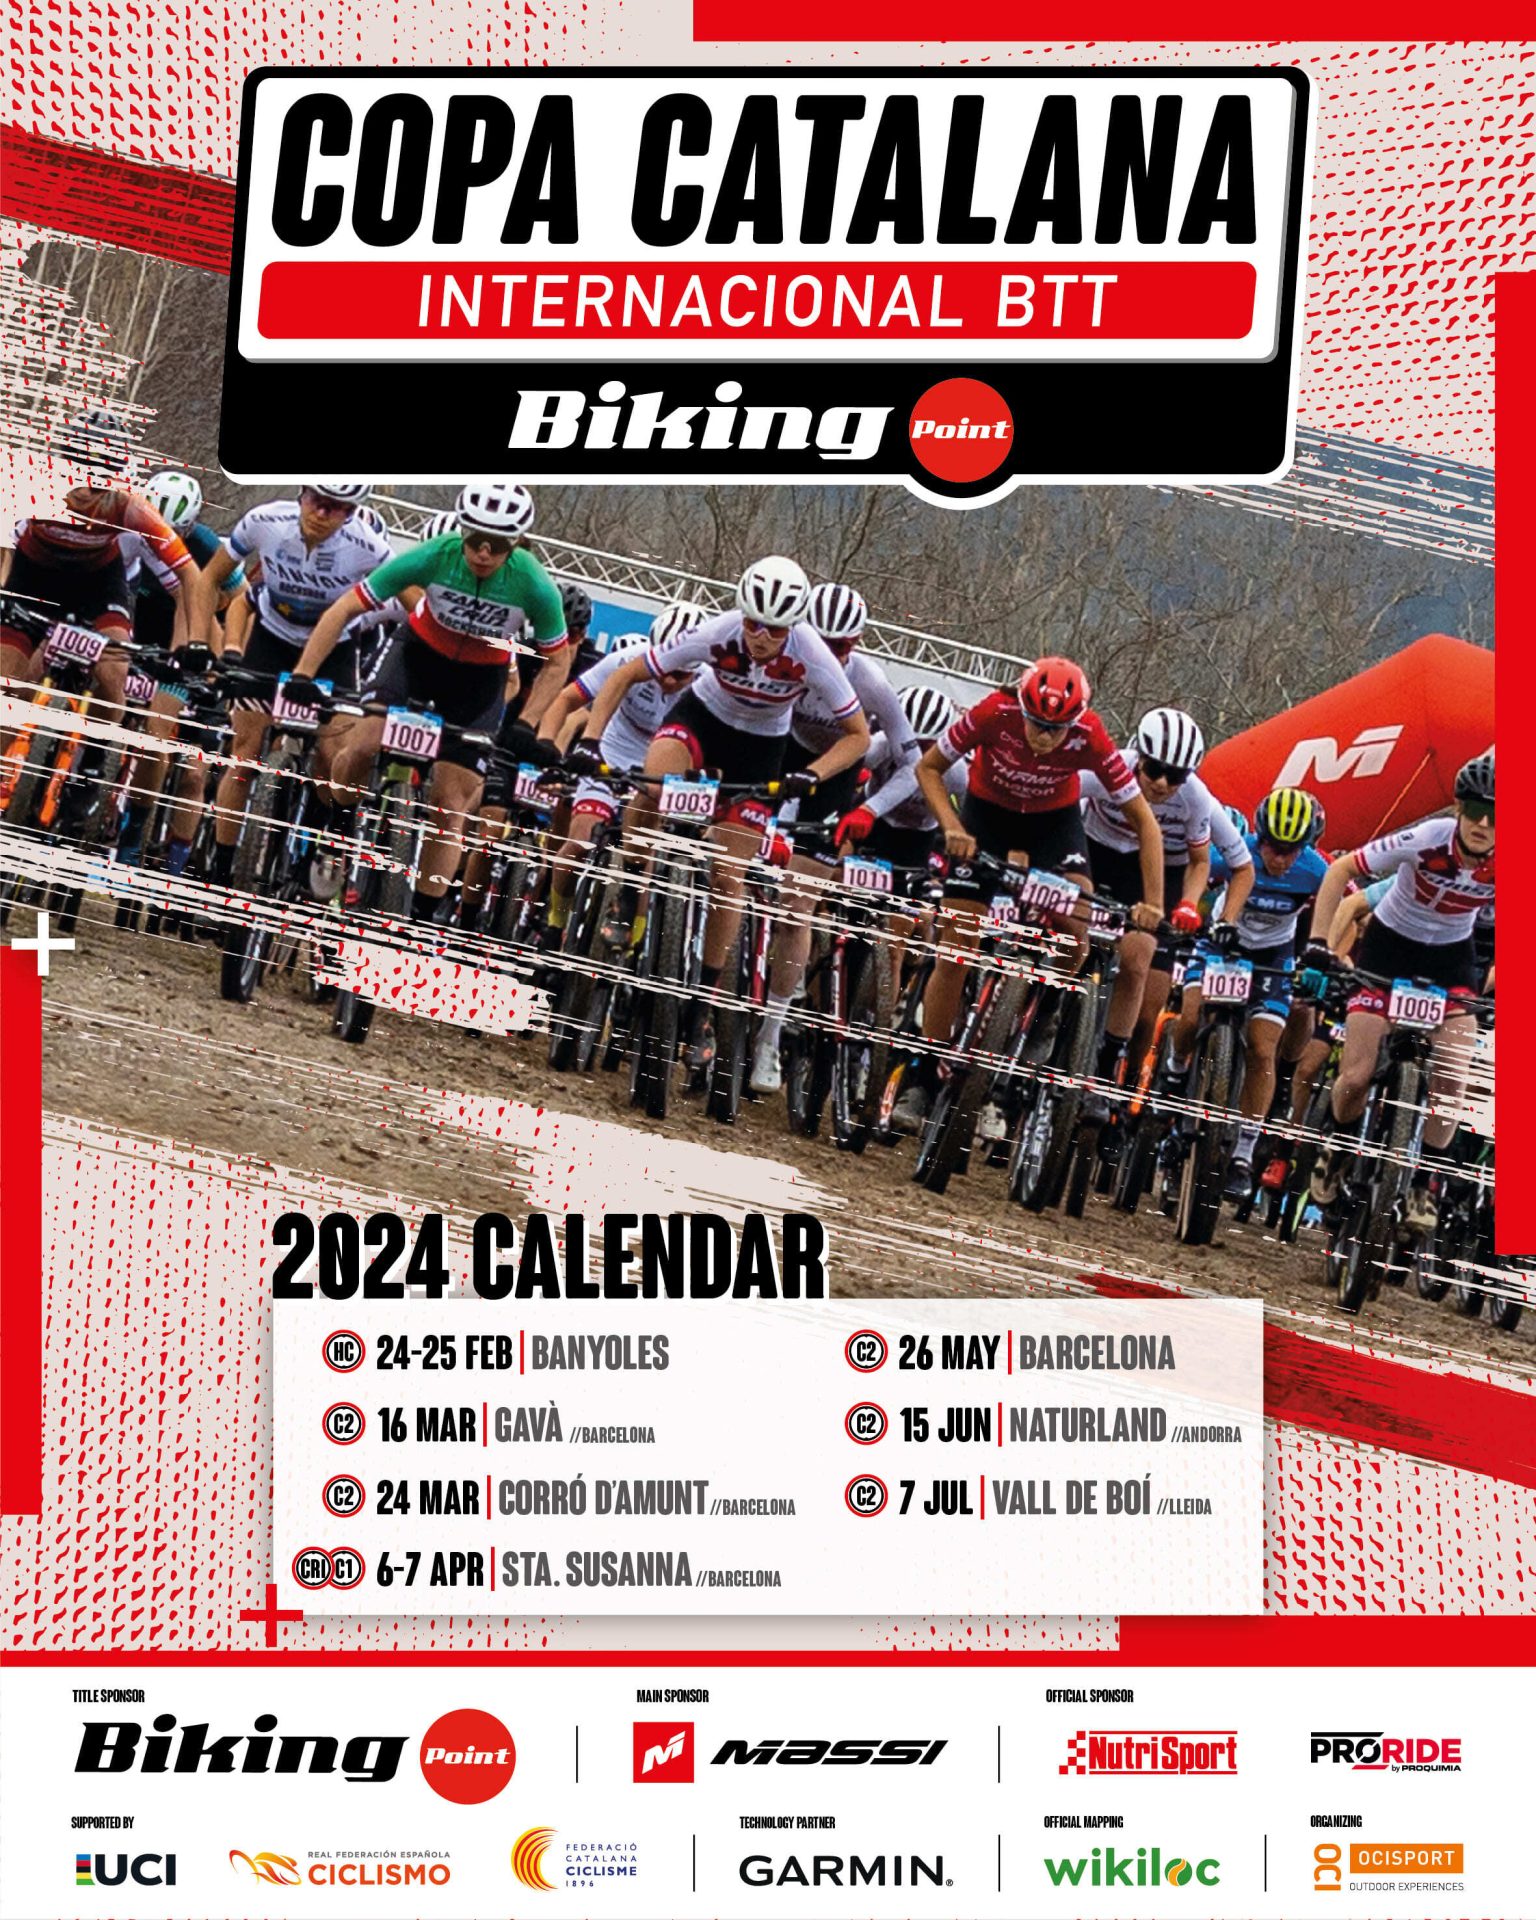 La Copa Catalana Internacional BTT Biking Point llega en 2024 con 7 pruebas internacionales